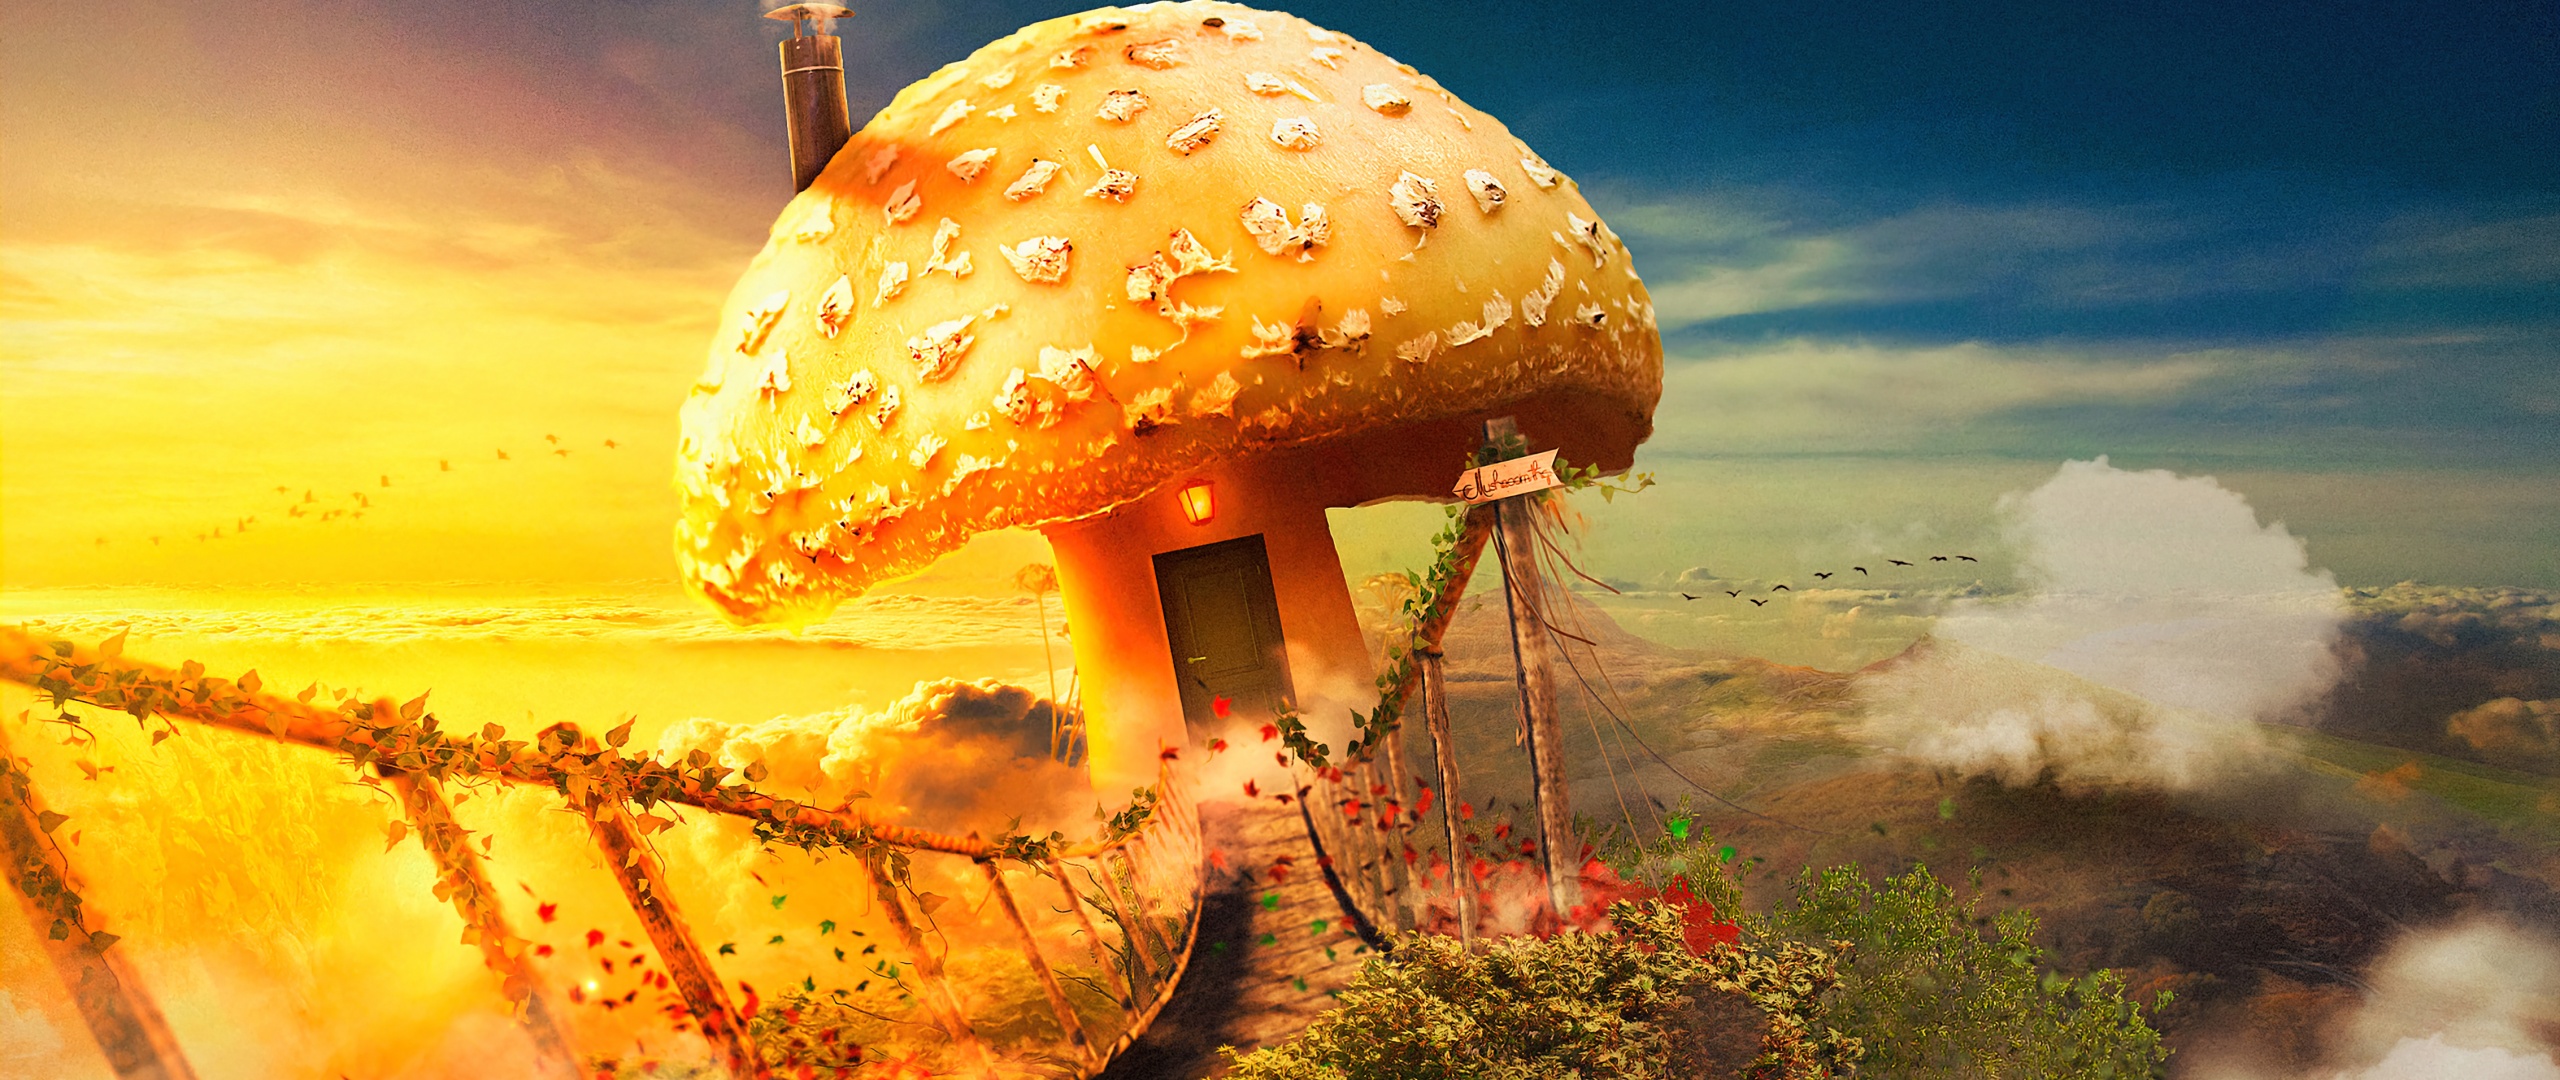 Mushroom house Wallpaper 4K, Surreal, Bridge, Dream, Fantasy, Clouds, Graphics CGI